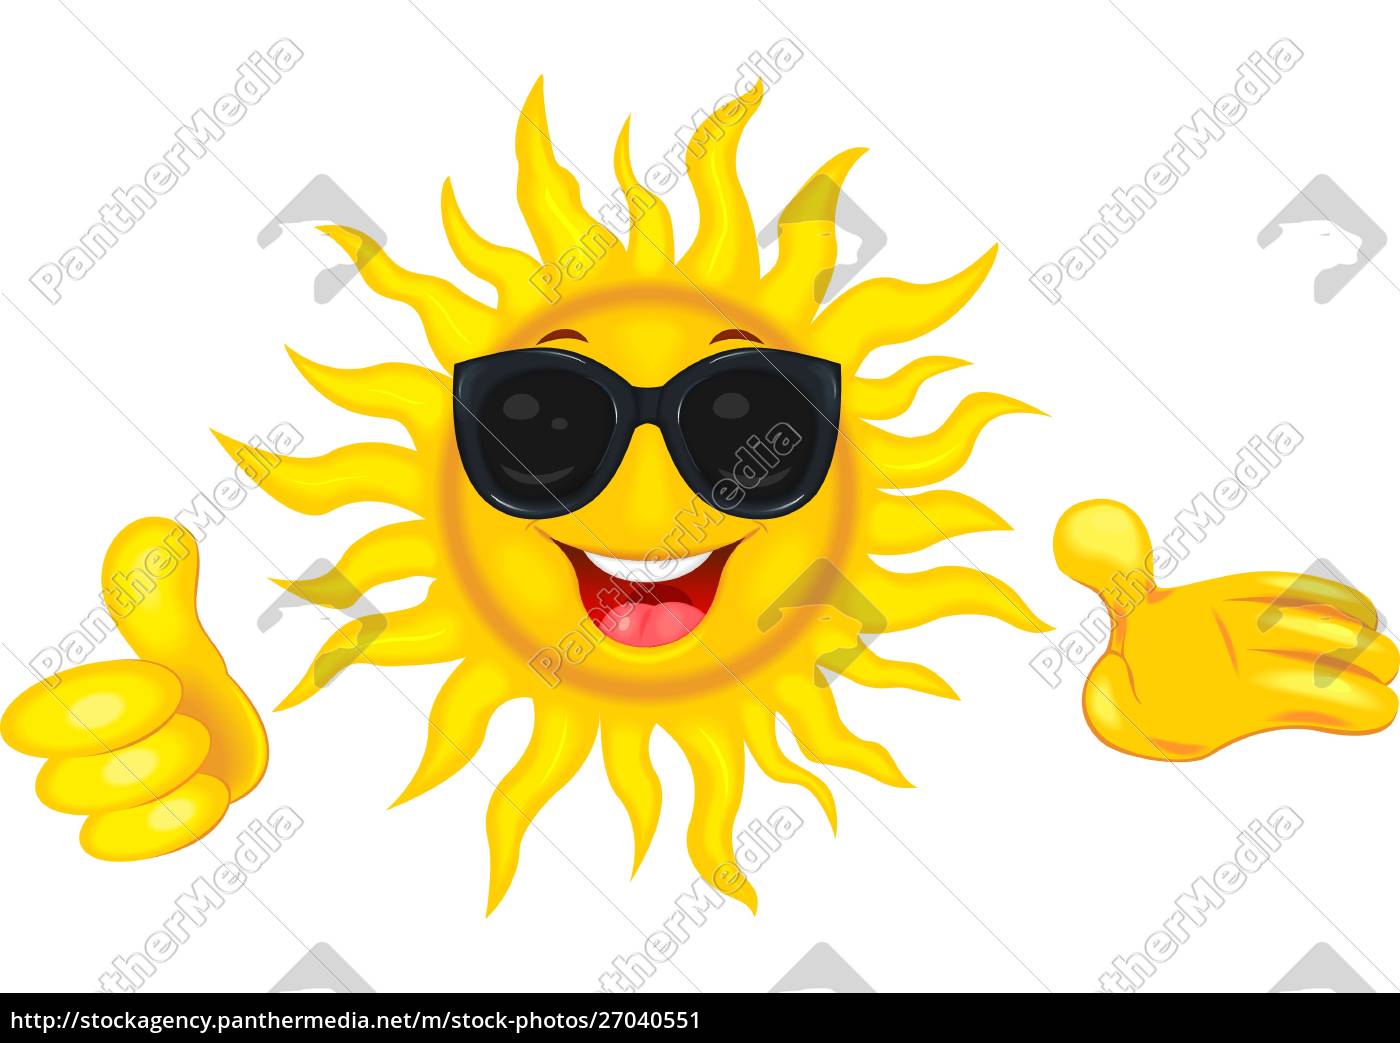 Holde petulance mager Glad sol i solbriller - Stockphoto #27040551 | PantherMedia Billedbureau